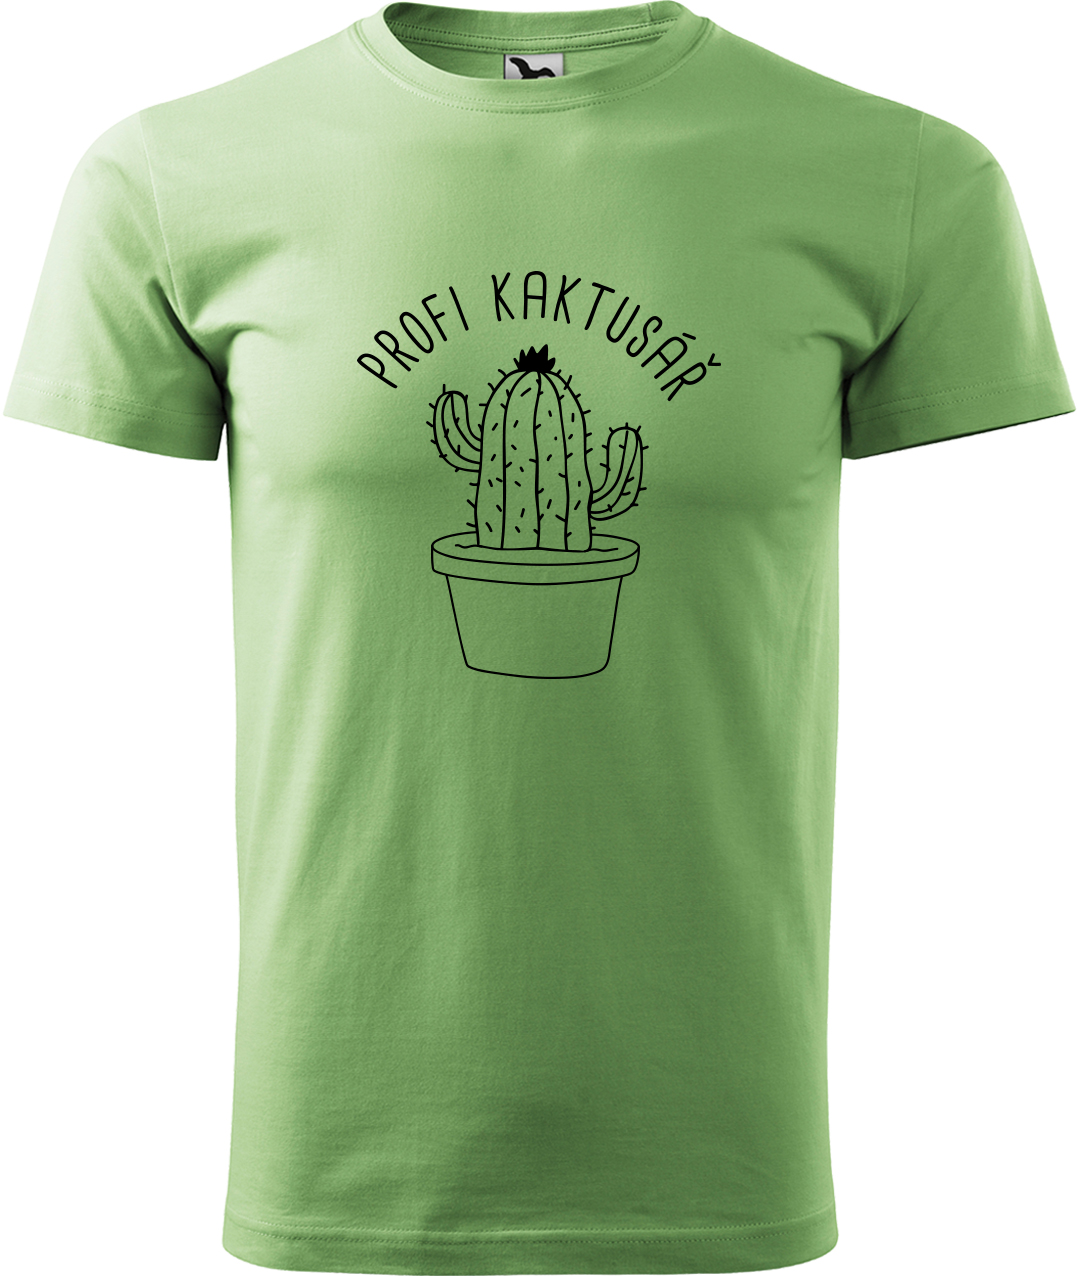 Tričko pro zahradníka - Profi kaktusář Velikost: M, Barva: Trávově zelená (39), Střih: pánský